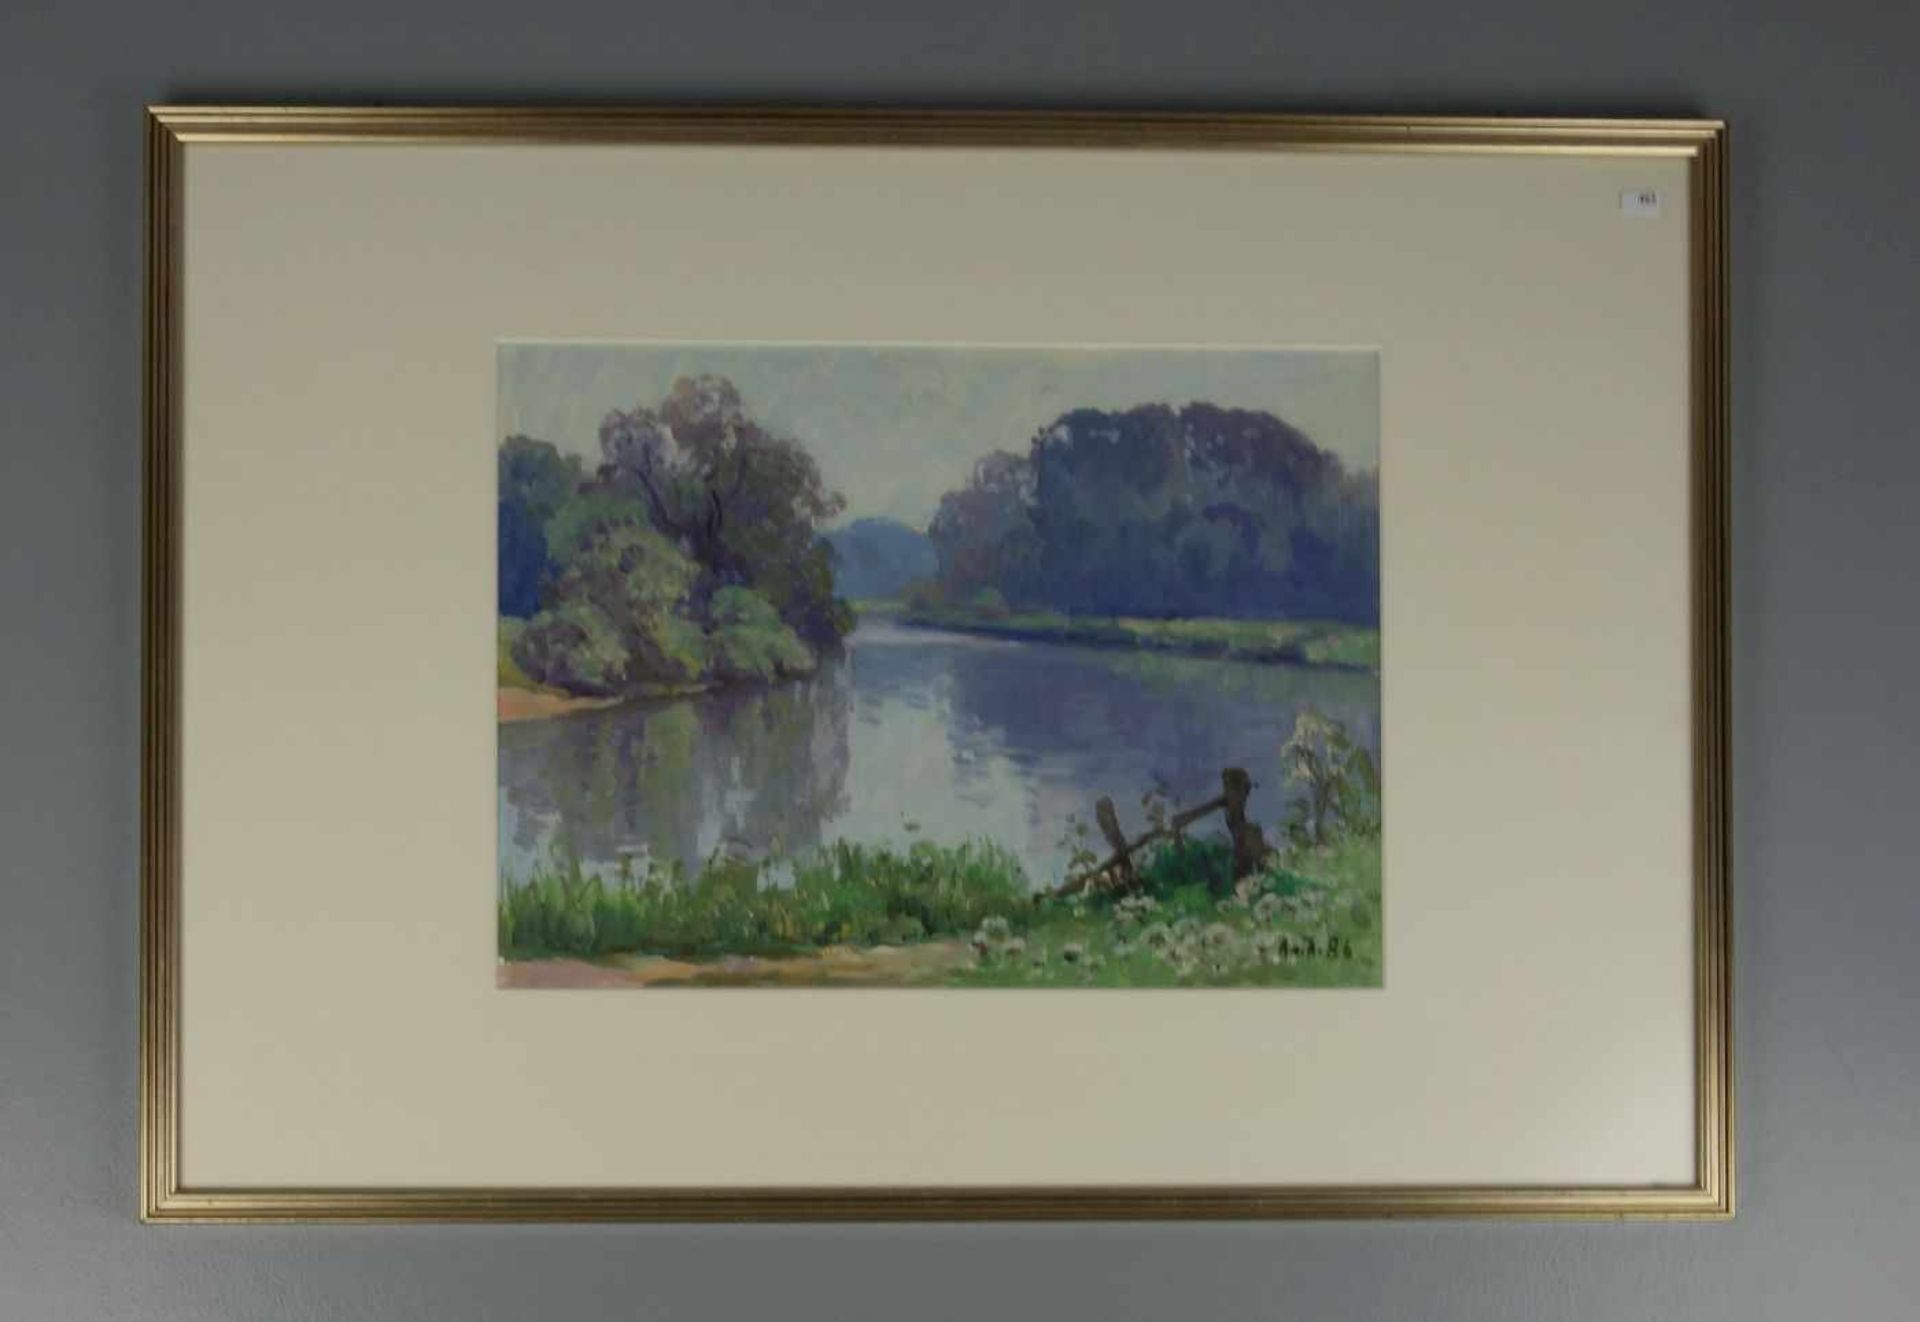 VON ASSAULENKO, ALEXEJ (Kiew 1913 - 1989 Kiel), Gemälde / painting: "Flusslandschaft / Emsauen",